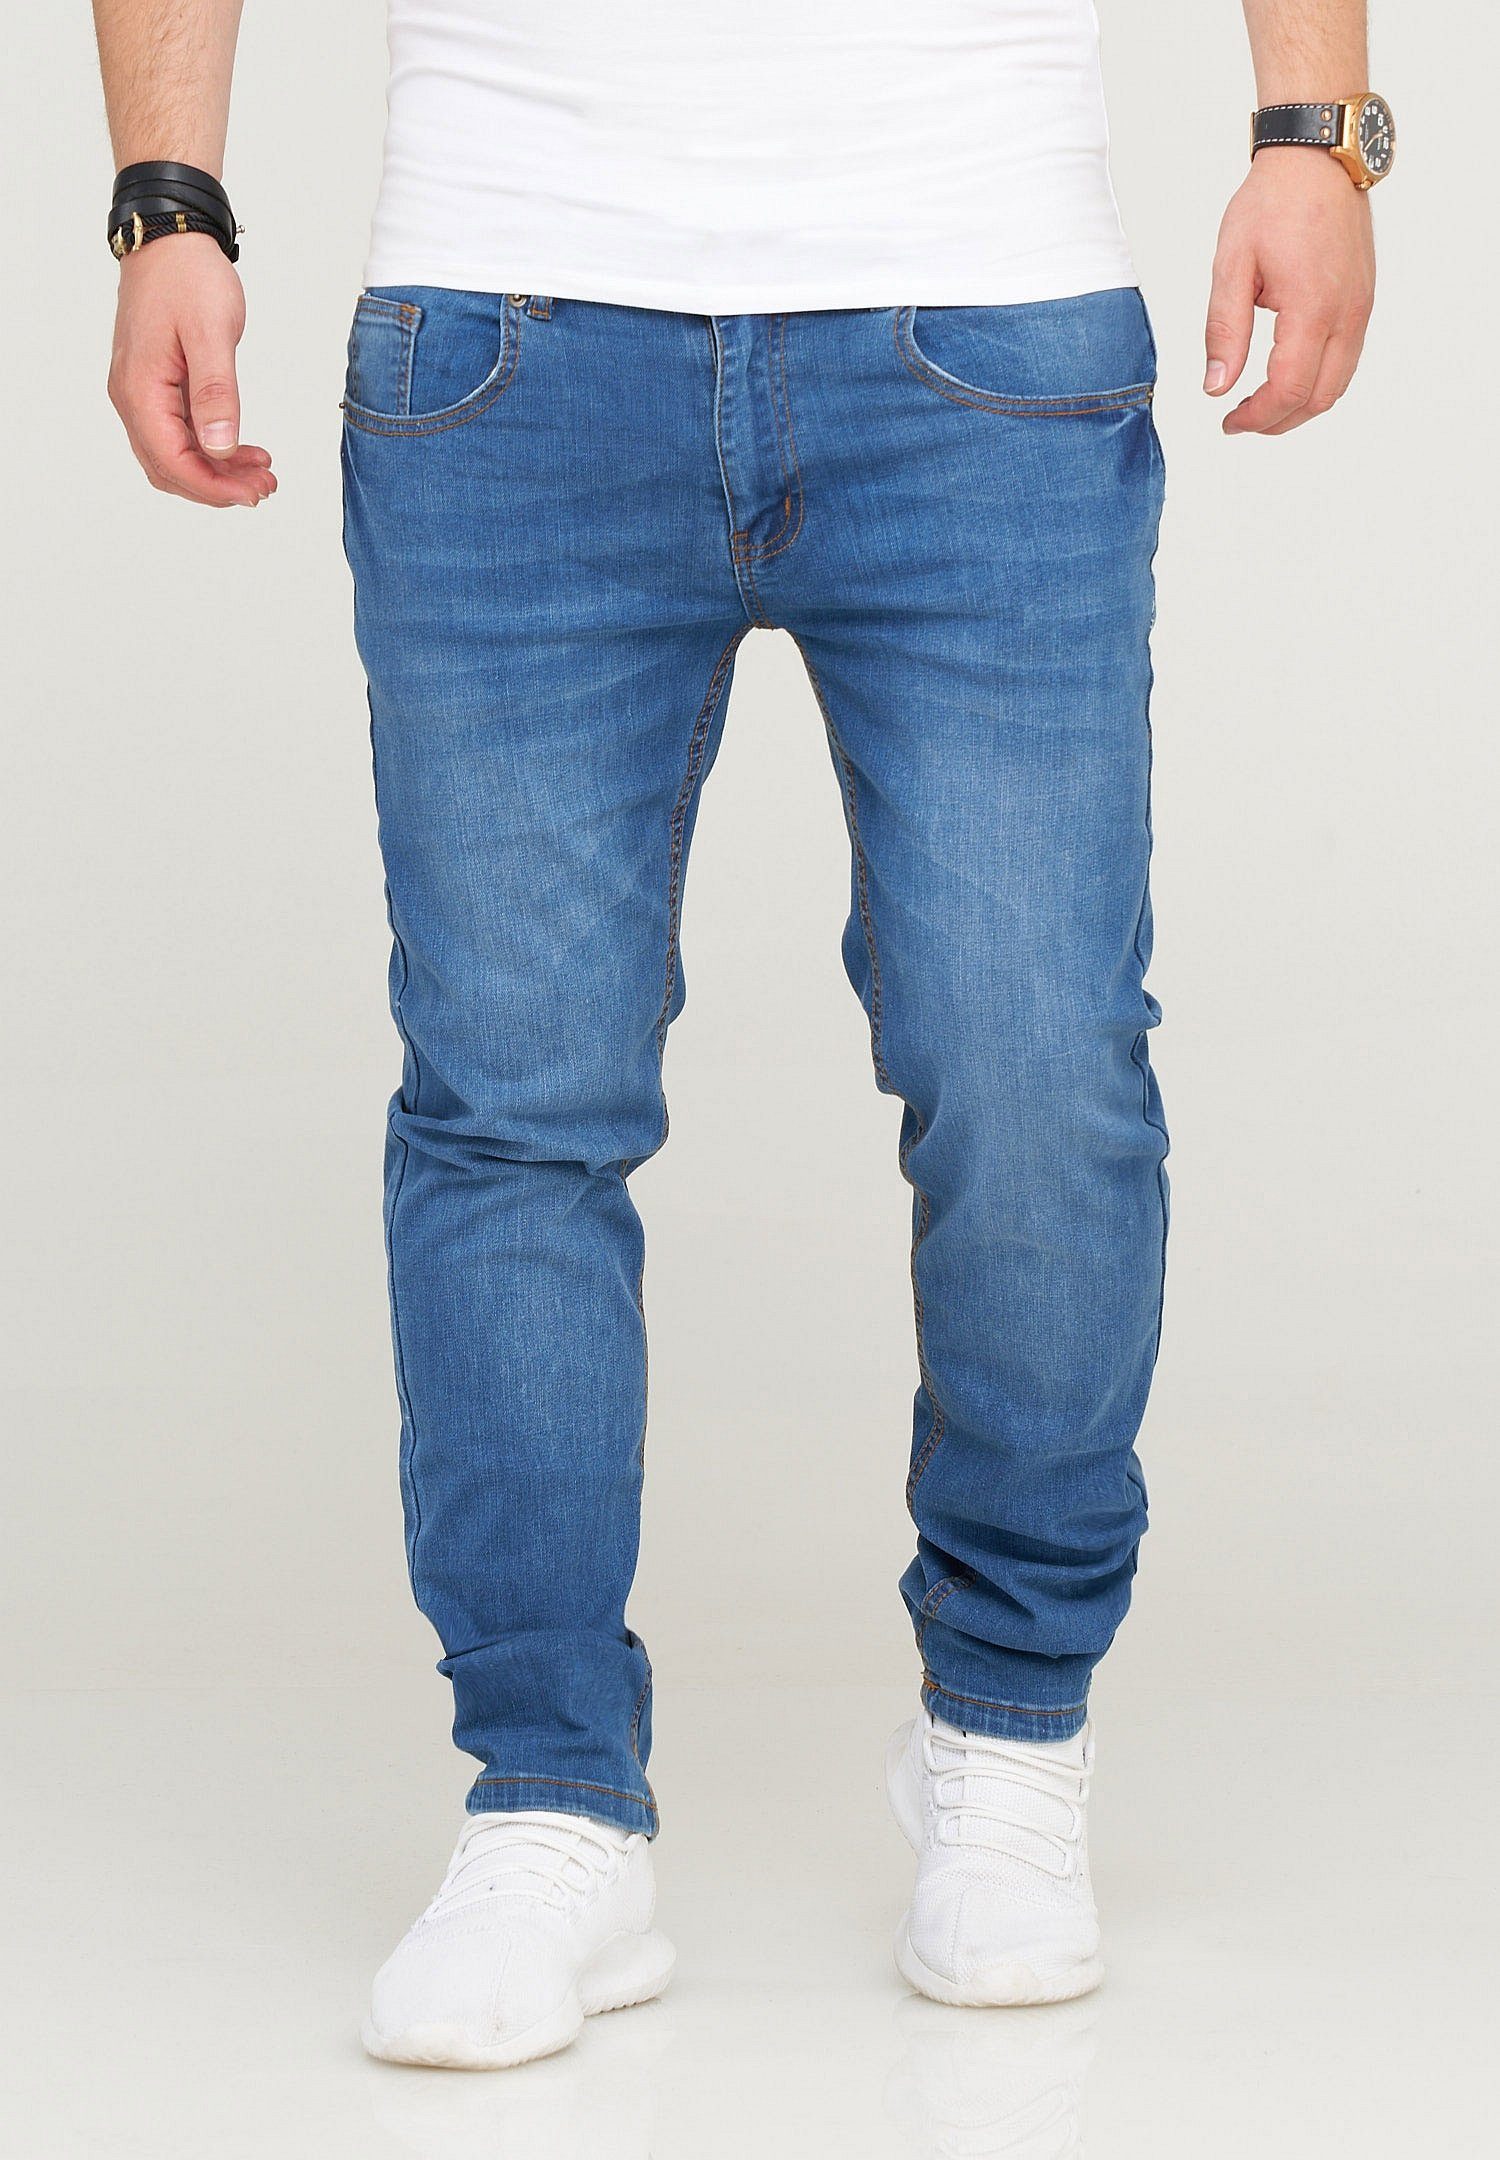 hellblau Slim-fit-Jeans 5-Pocket-Stil QUIRIN klassischen im SOULSTAR